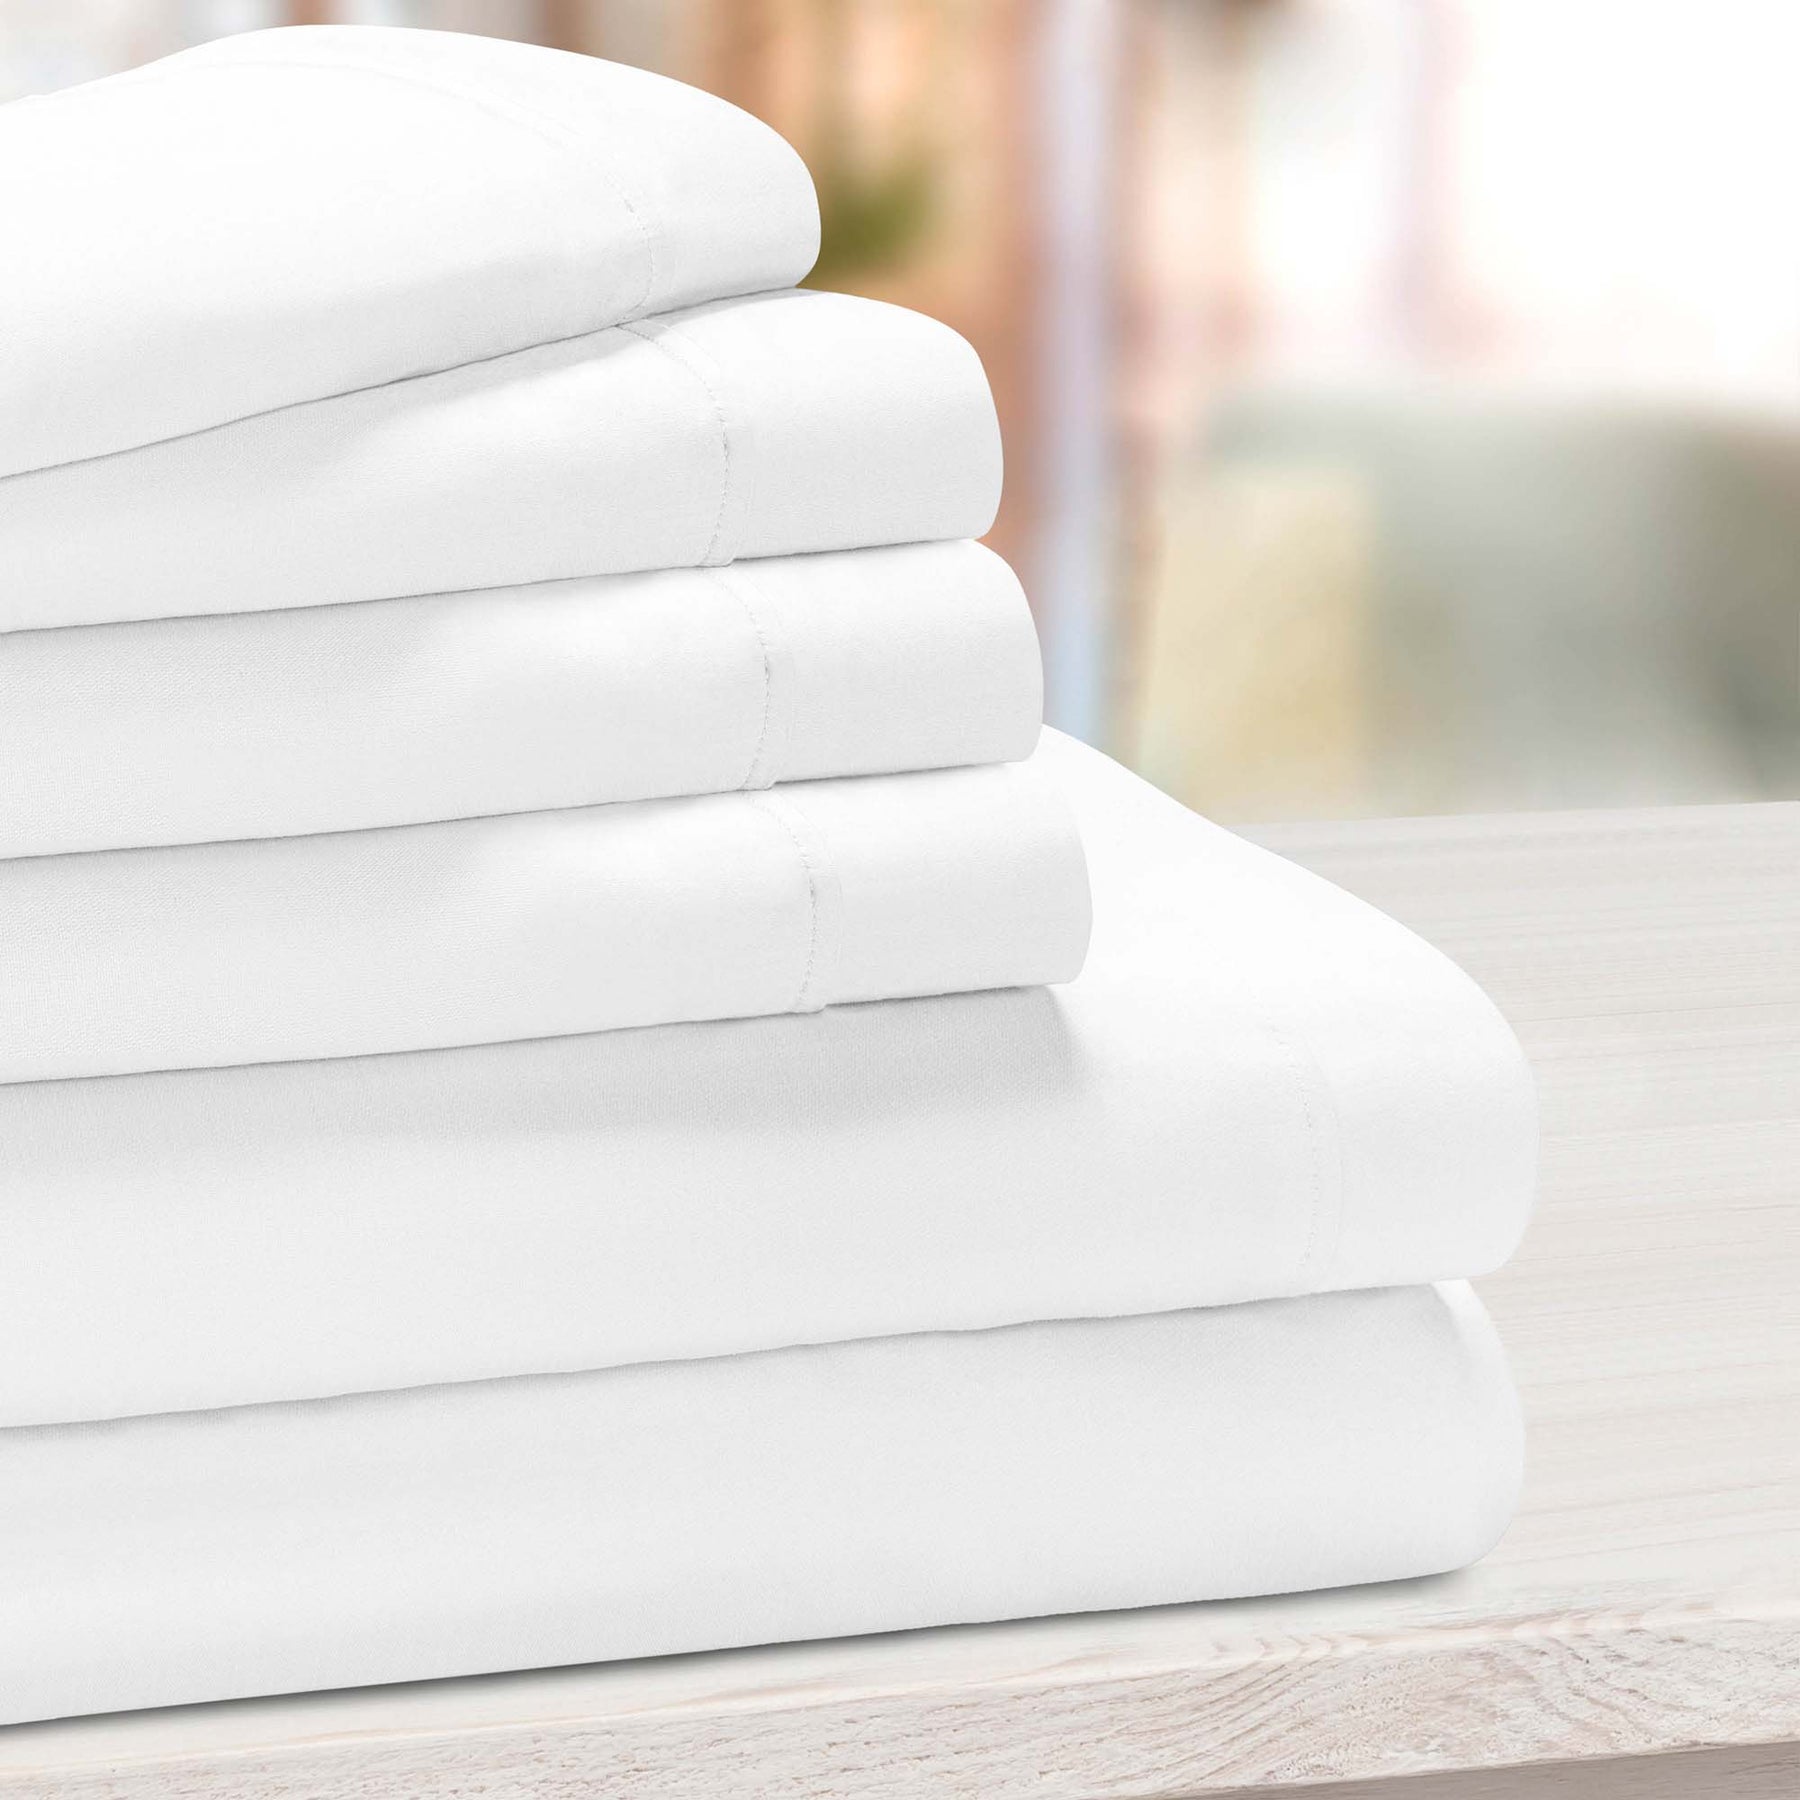 Superior Solid Deep Pocket Cotton Blend Bed Sheet Set - White